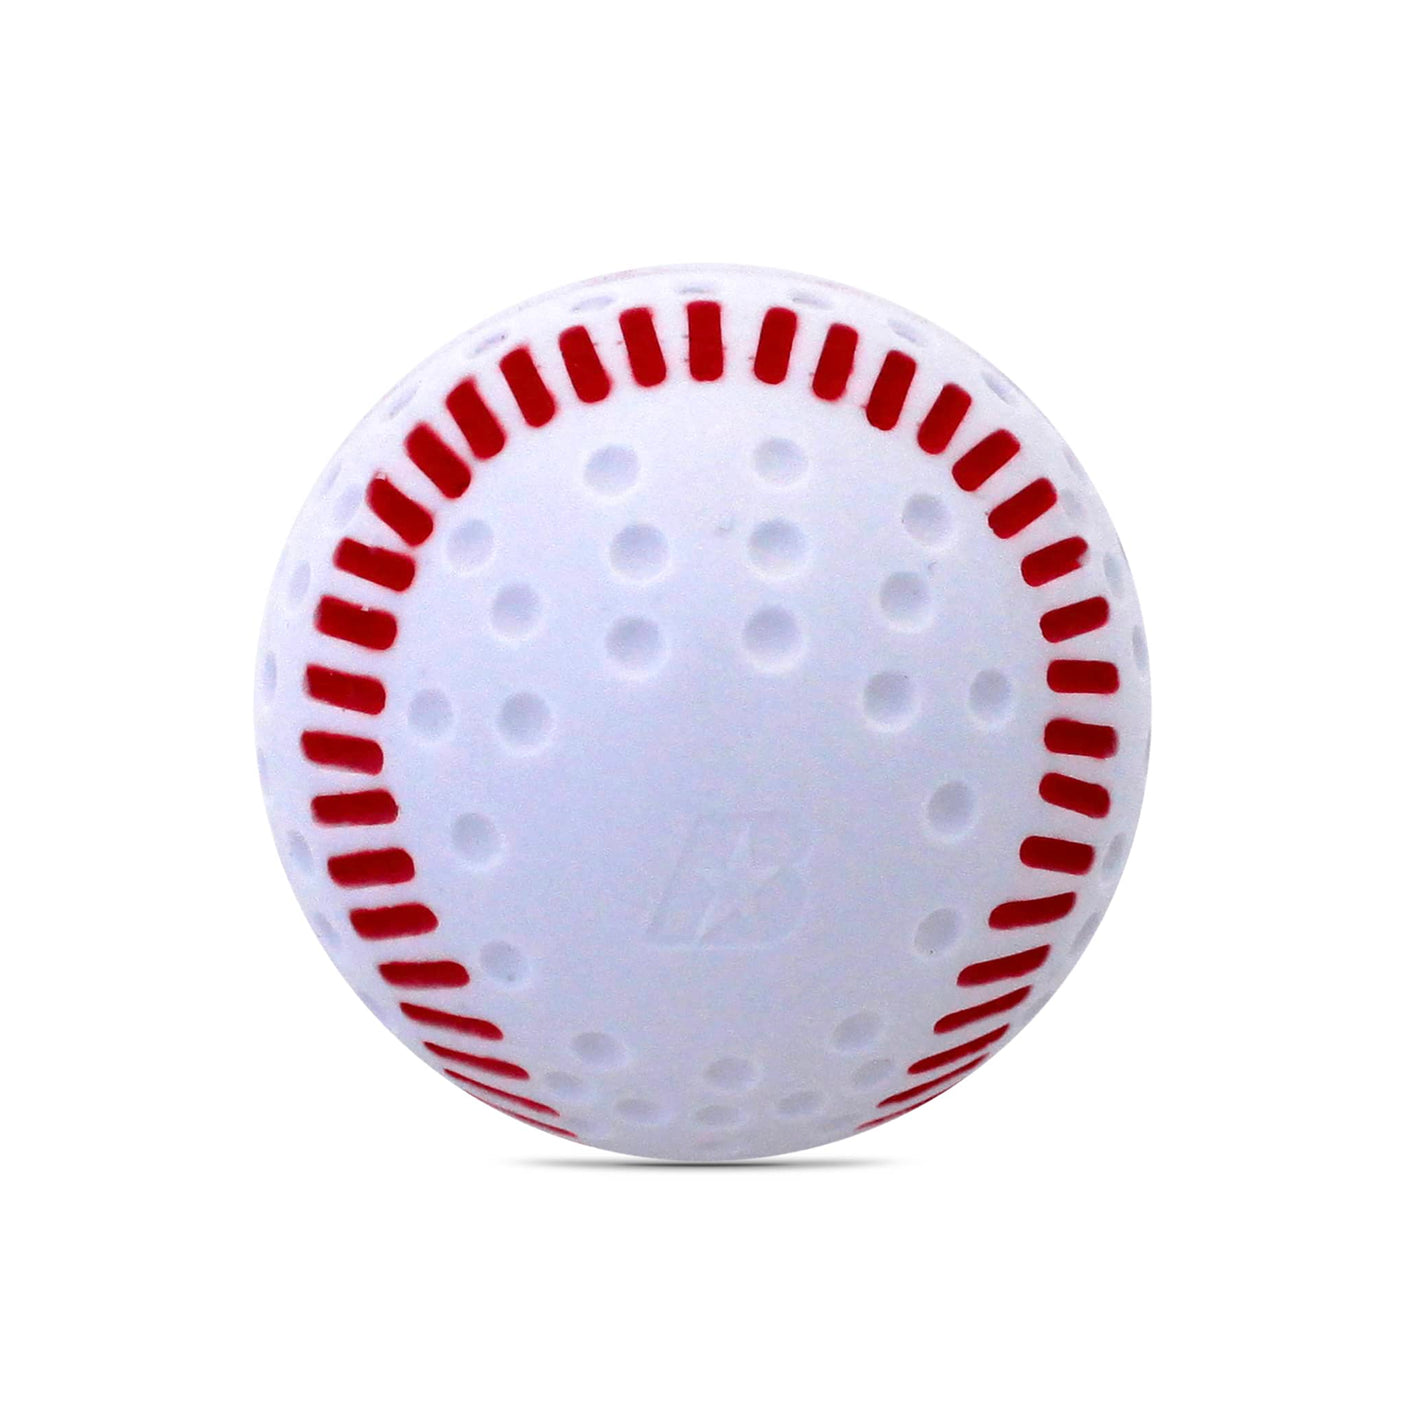 Axe Max Practice Balls Baseball - 1 Dozen